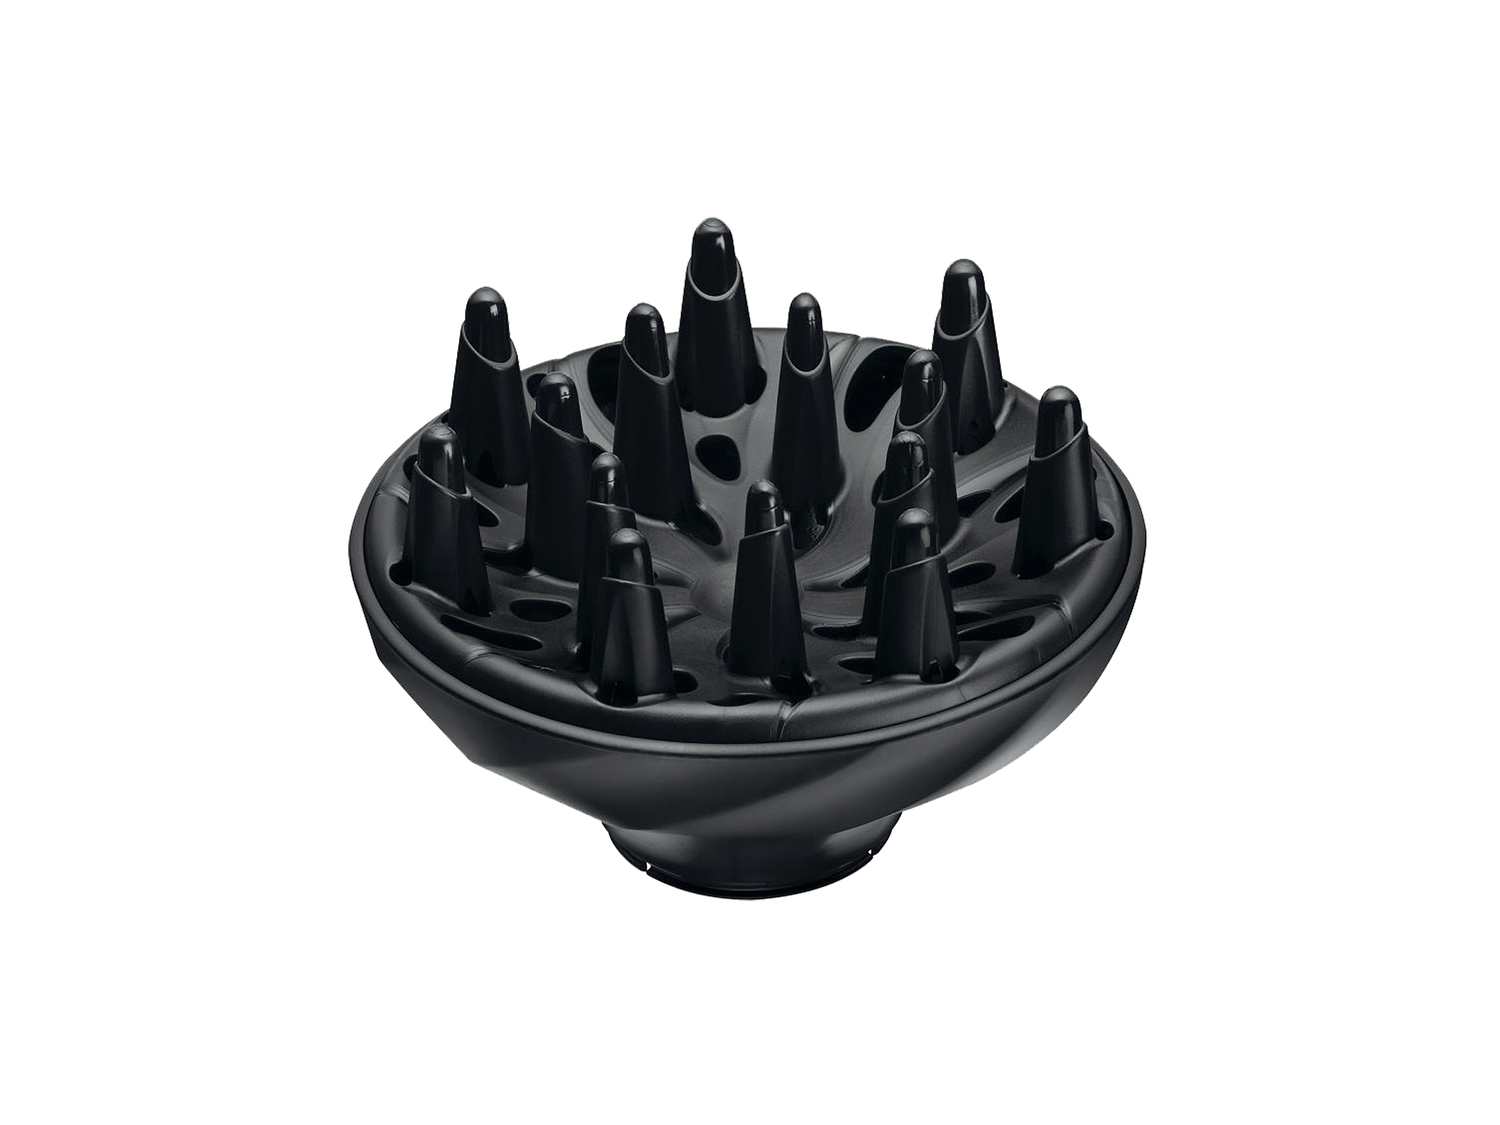 Asciugacapelli Ionic Dry Remington, prezzo 19.99 &#8364; 
- 3 temperature e ...